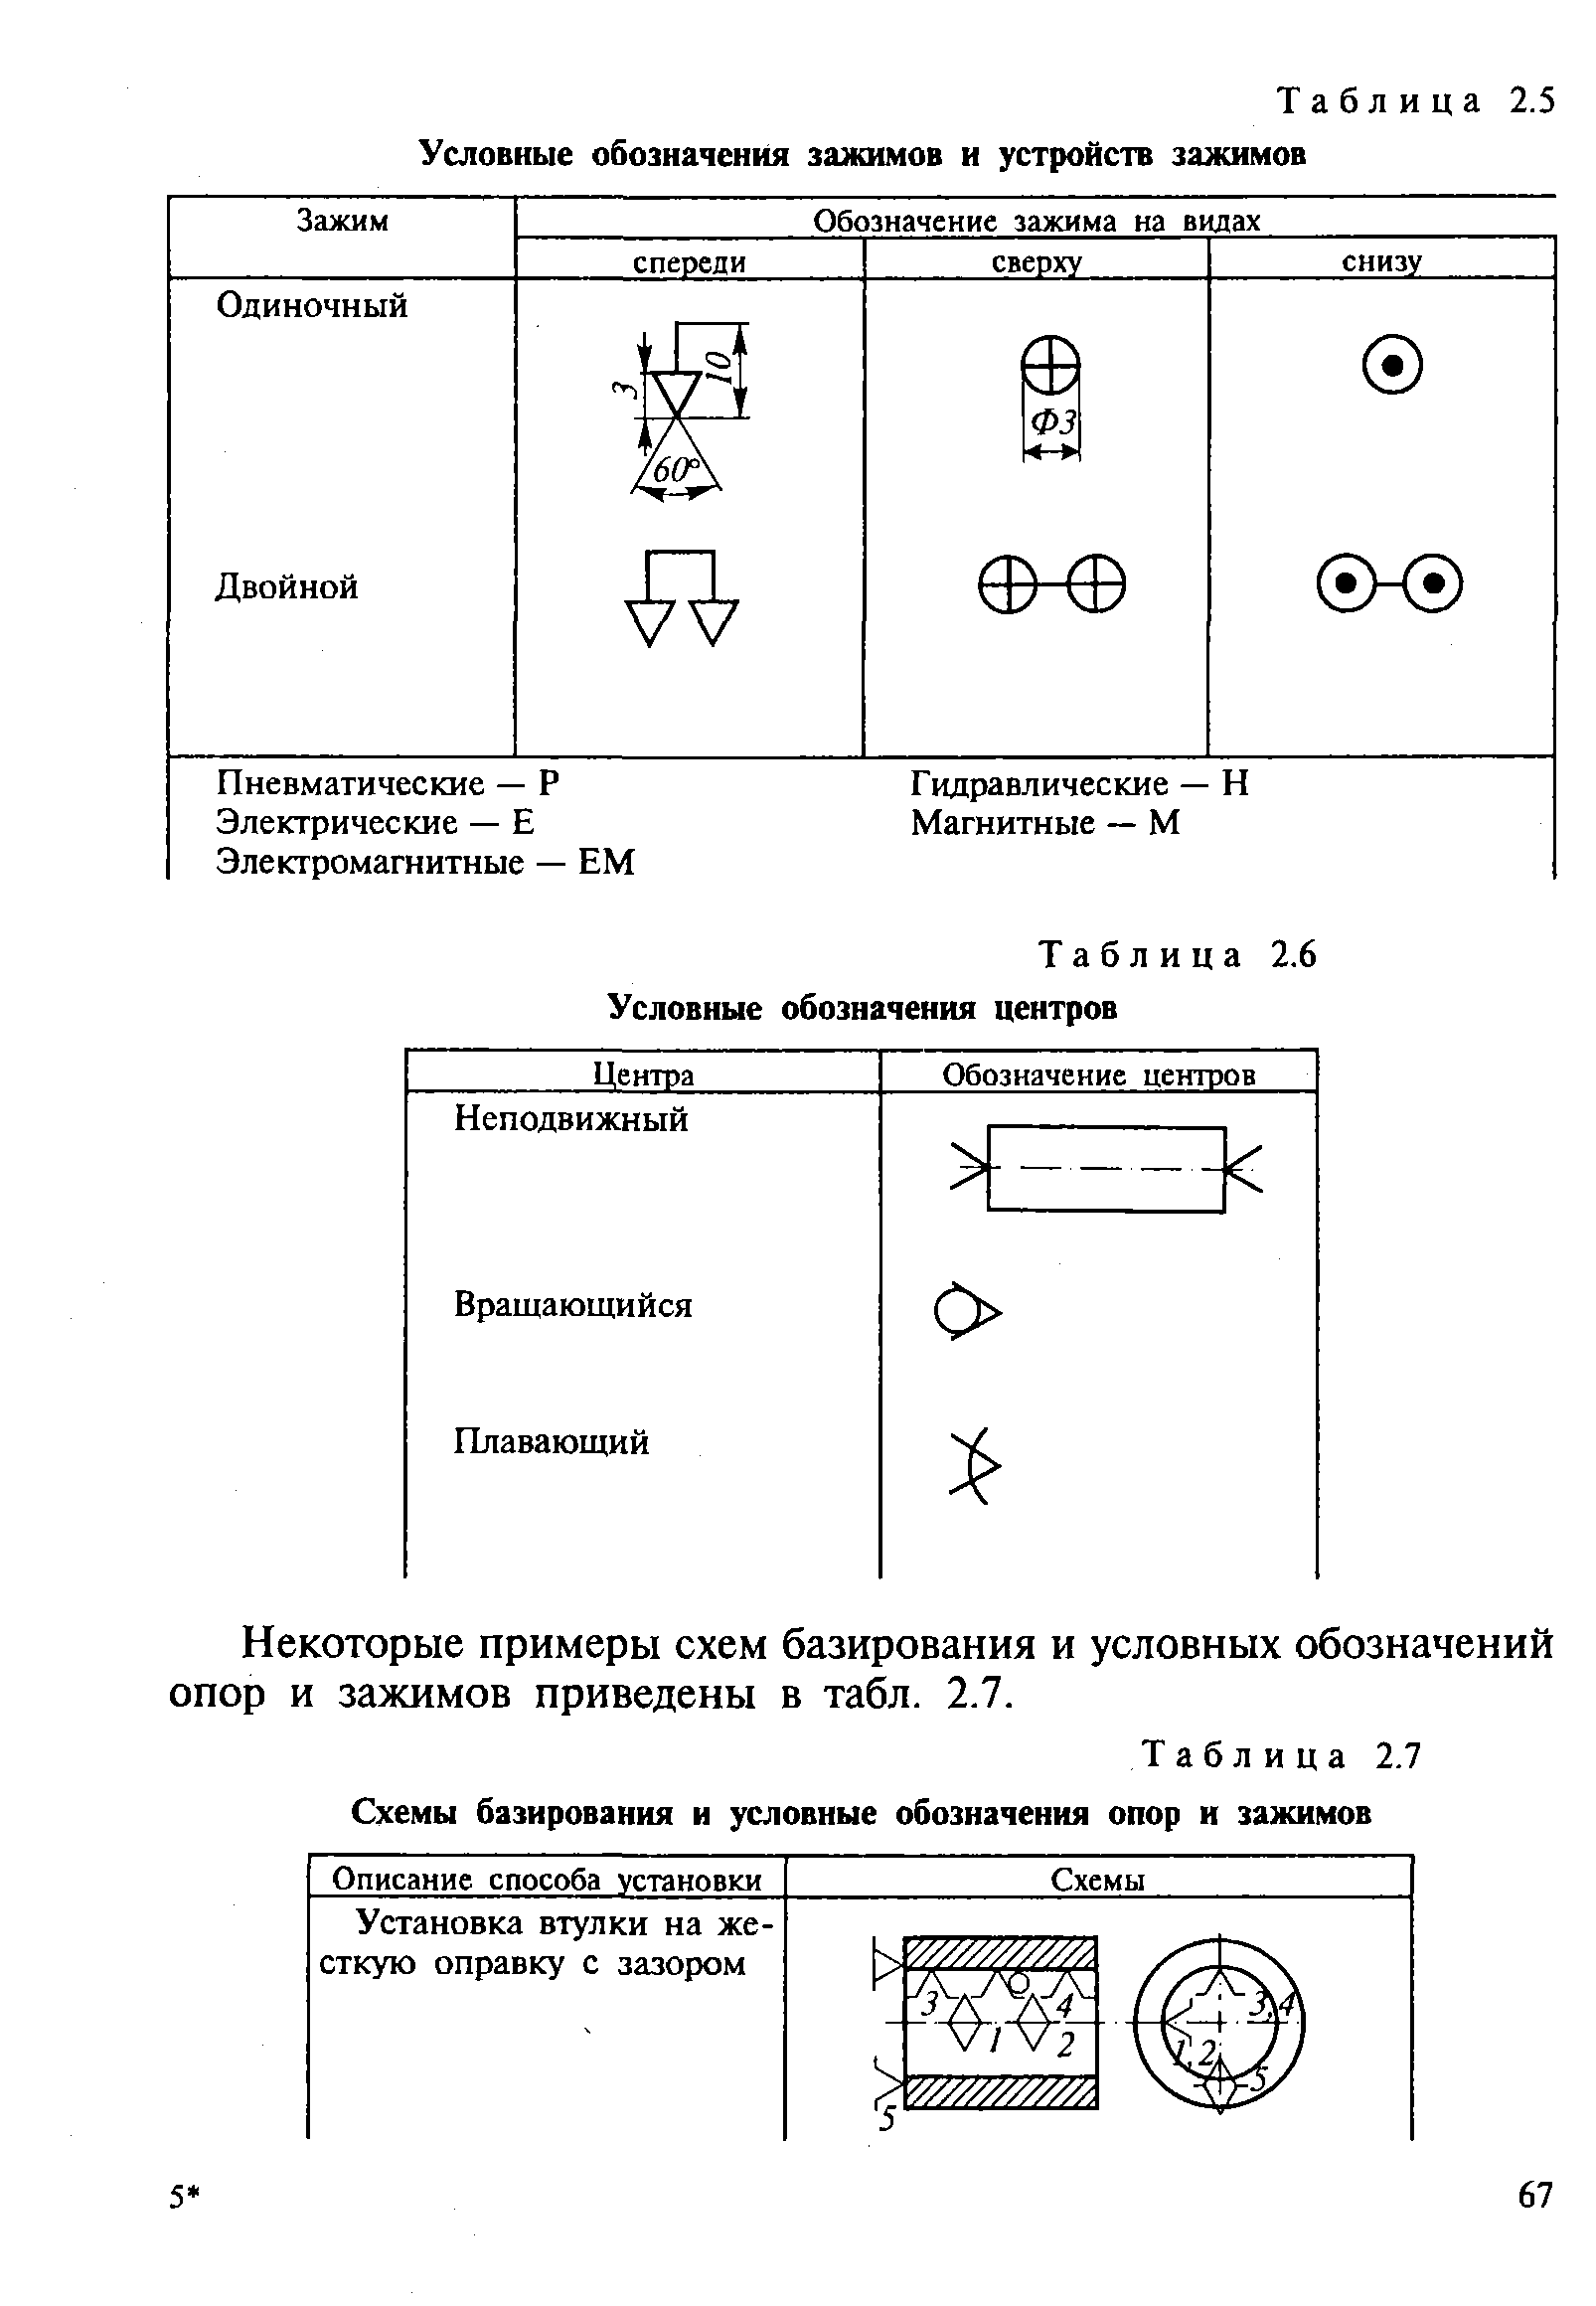 Таблица 2.7 Схемы базирования и <a href="/info/193222">условные обозначения опор</a> и зажимов
